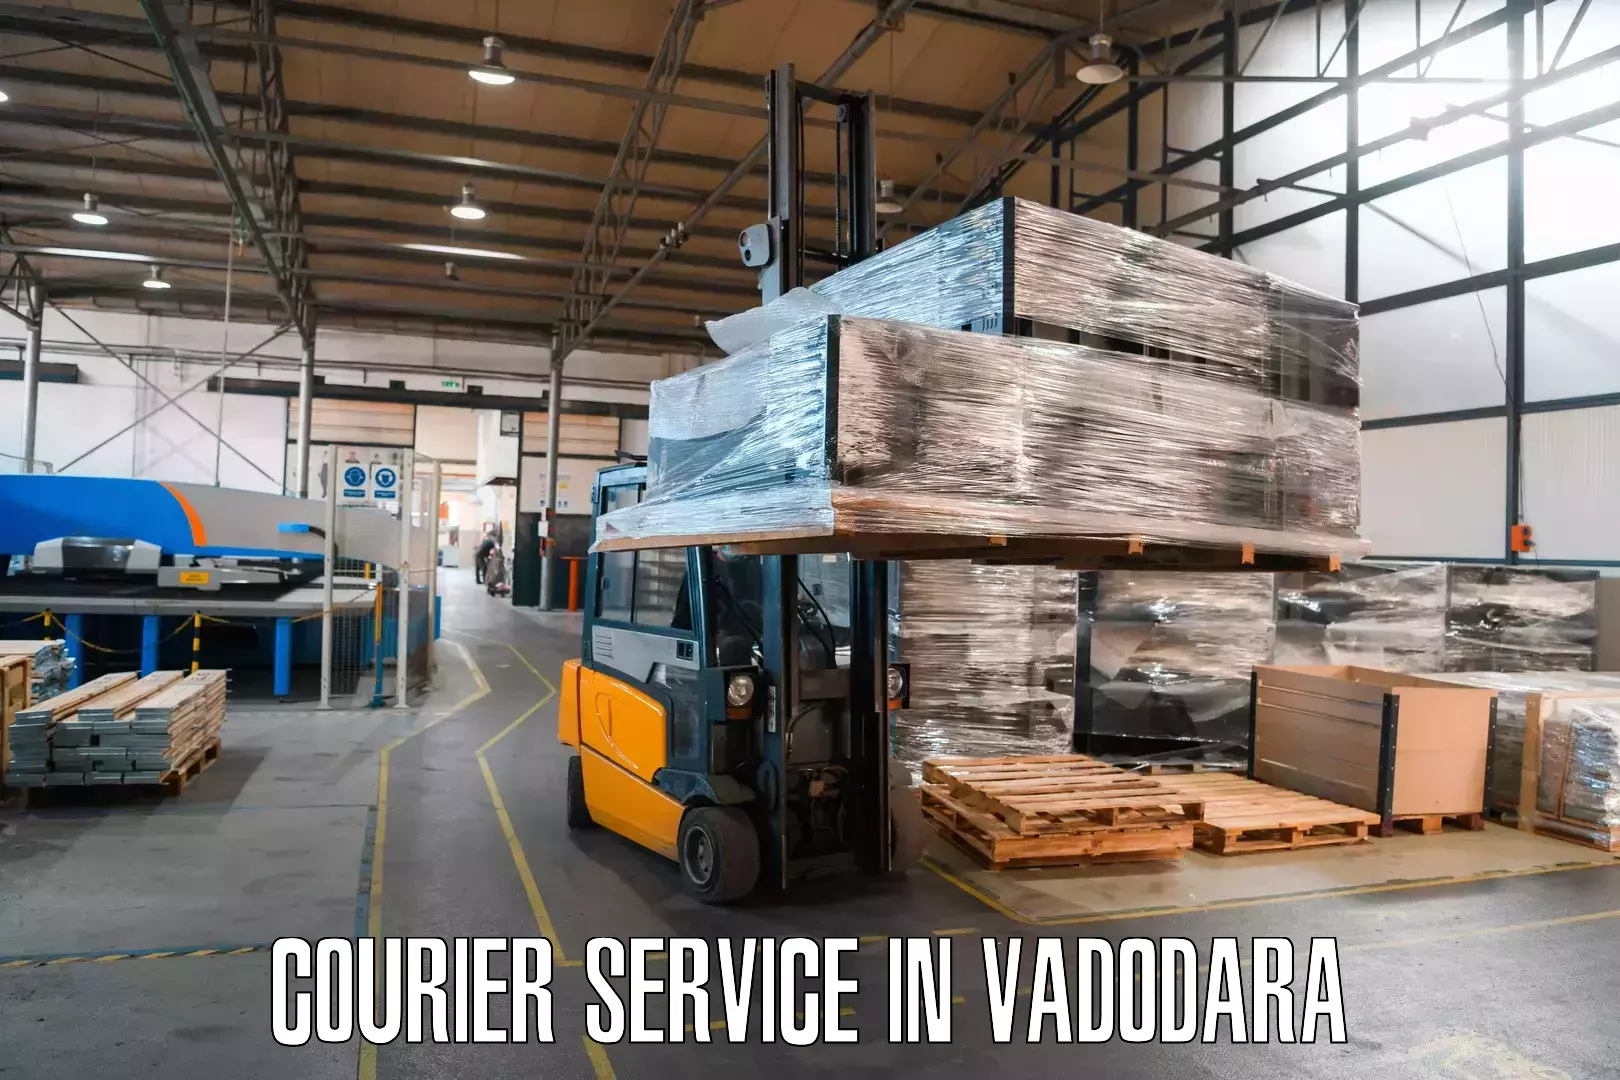 Effective logistics strategies in Vadodara